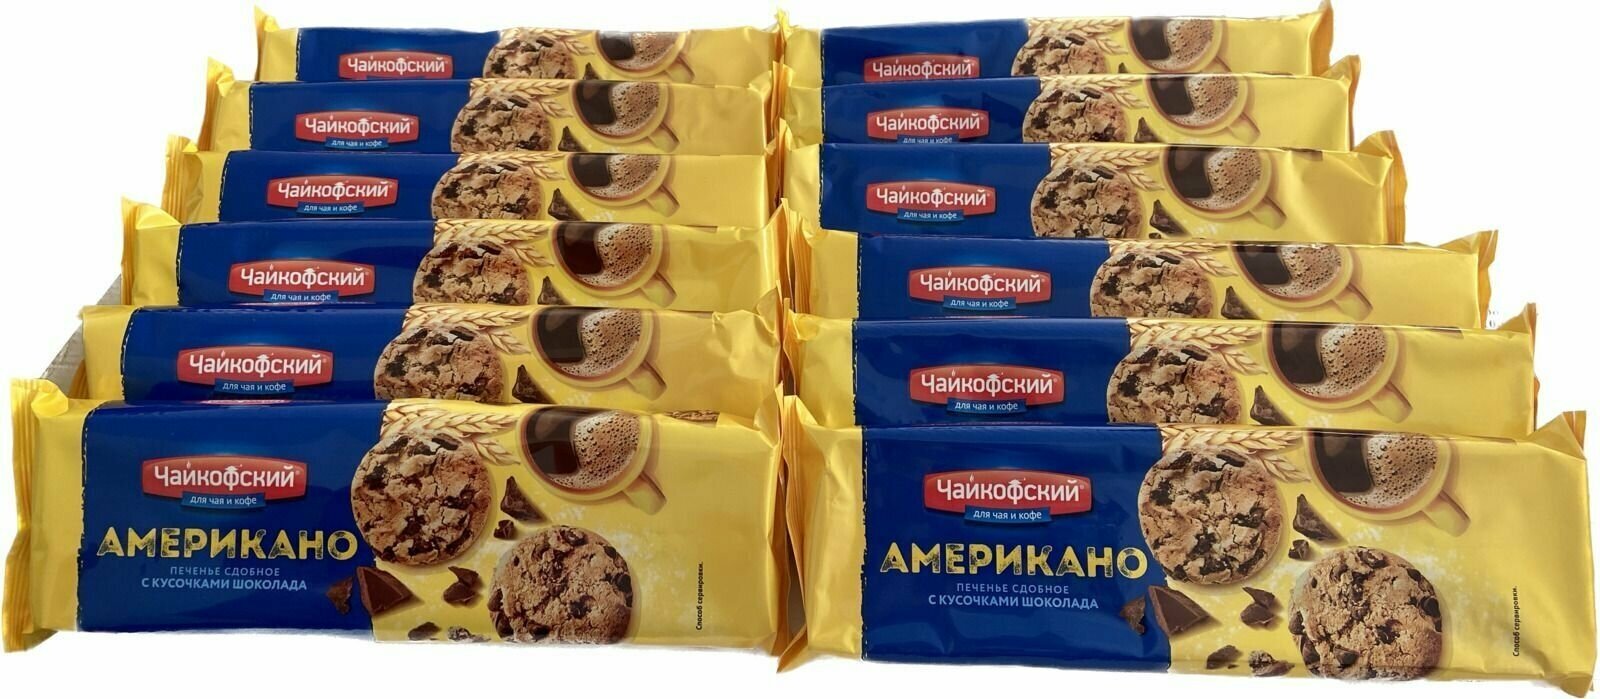 Печенье Американо с кусочками шоколада "Чайкофский" 145 гр * 12 штук (упаковка)